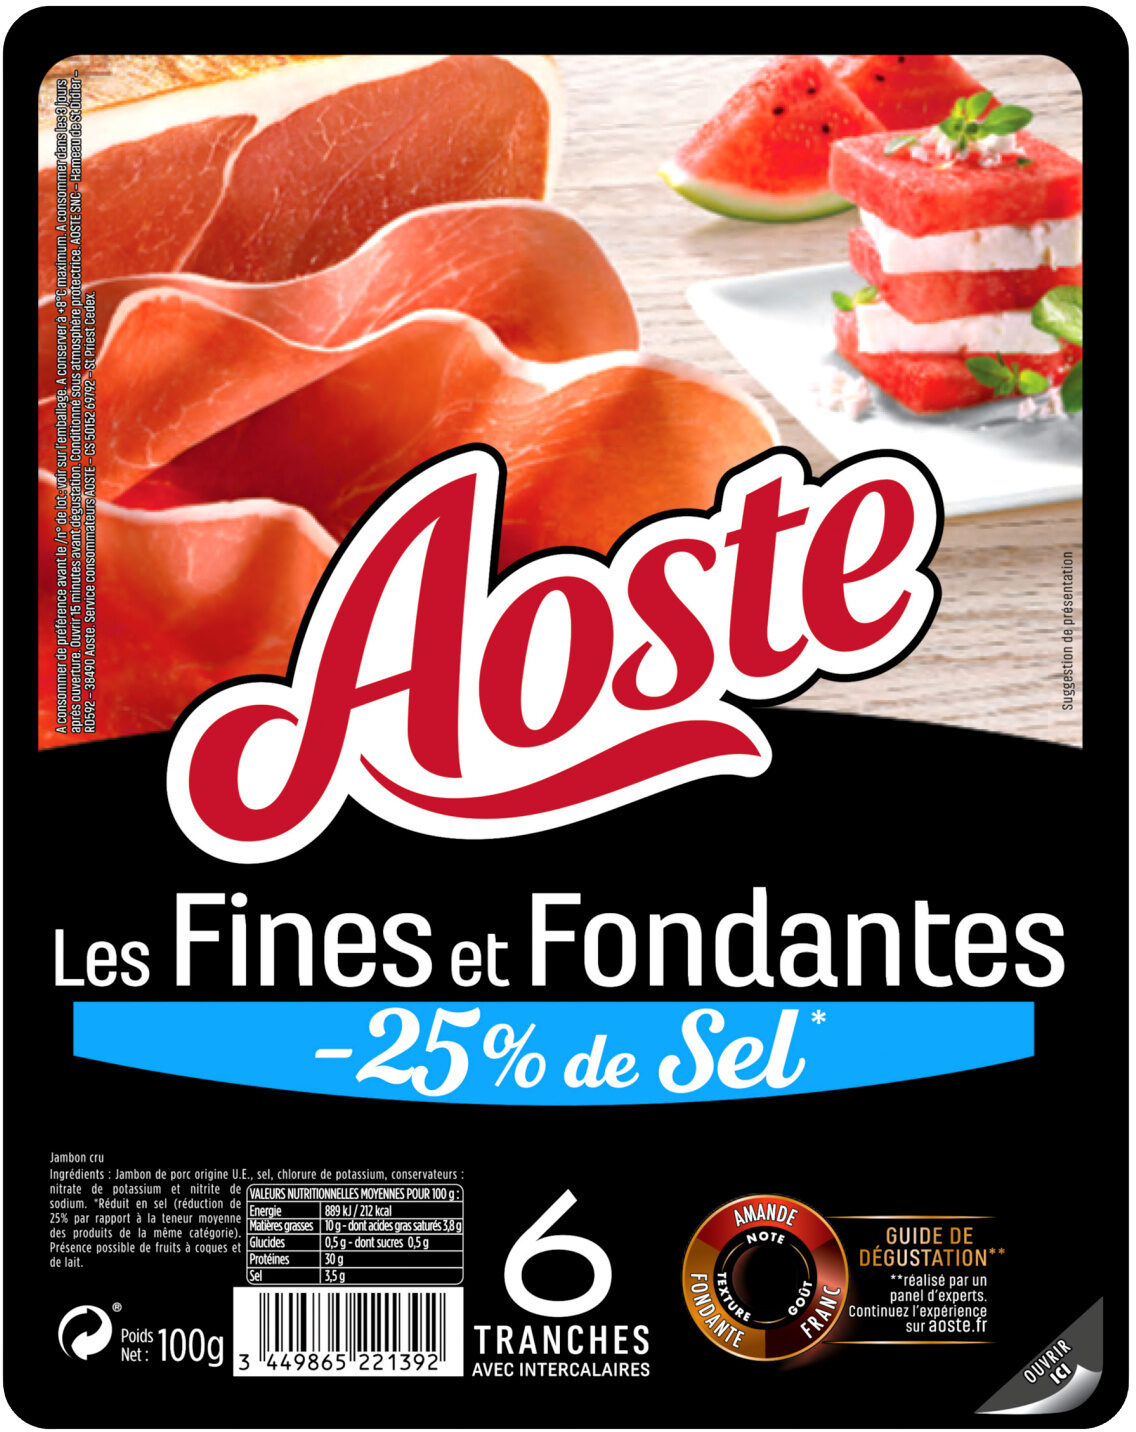 Les Fines et Fondantes -25% de sel - Aoste - Product - fr